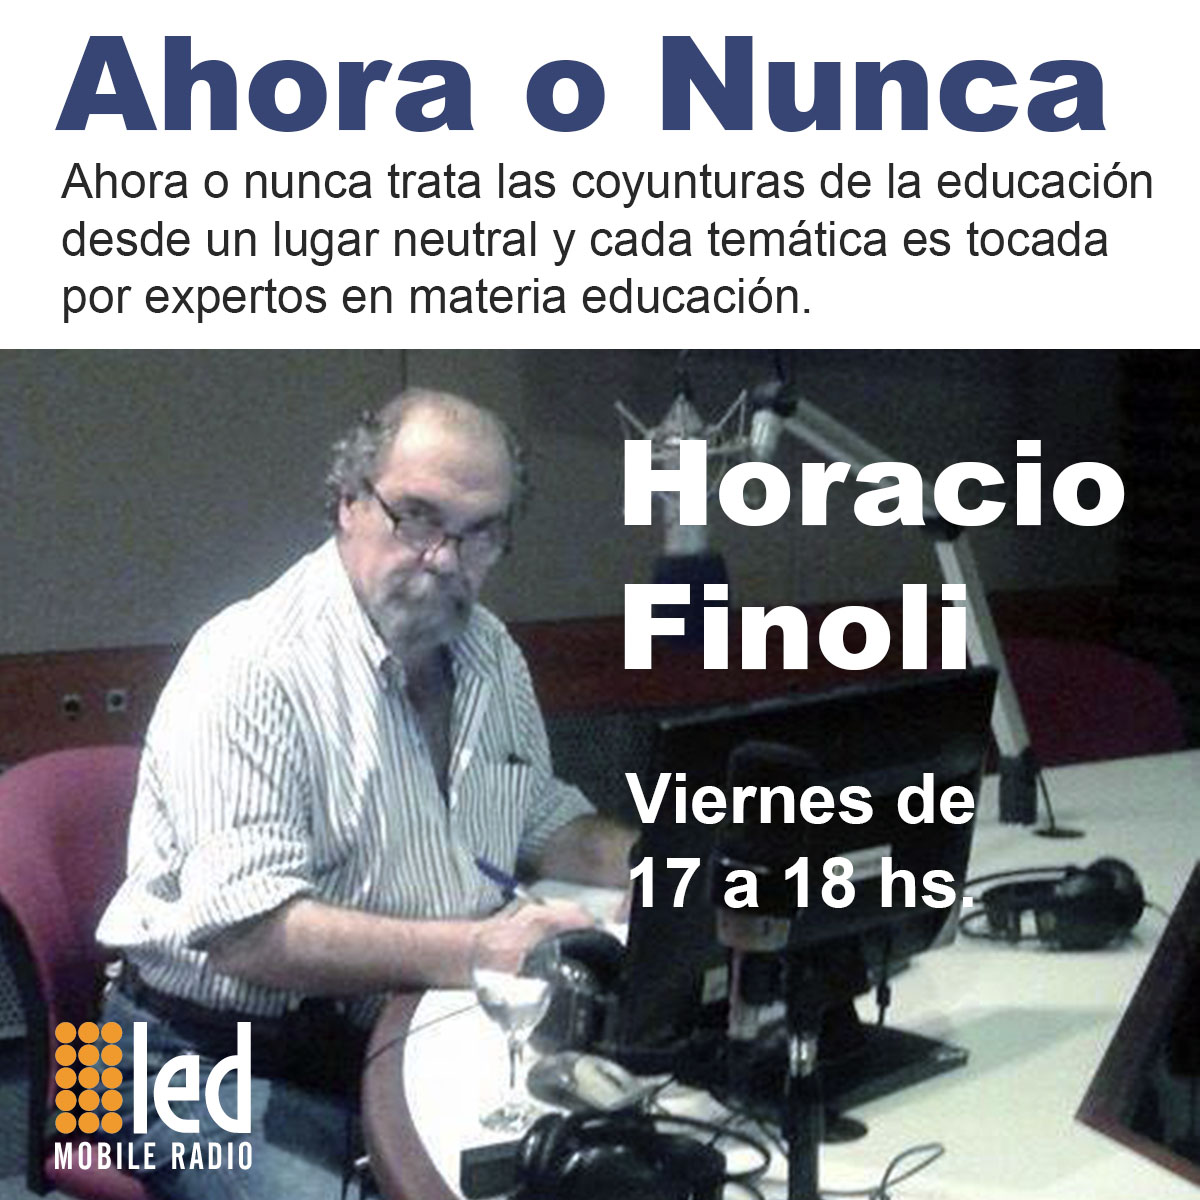 #Podcast Ahora o Nunca | 15.06: Desde Córdoba, 100 años #ReformaUniversitaria y Claudio Rama Vitale